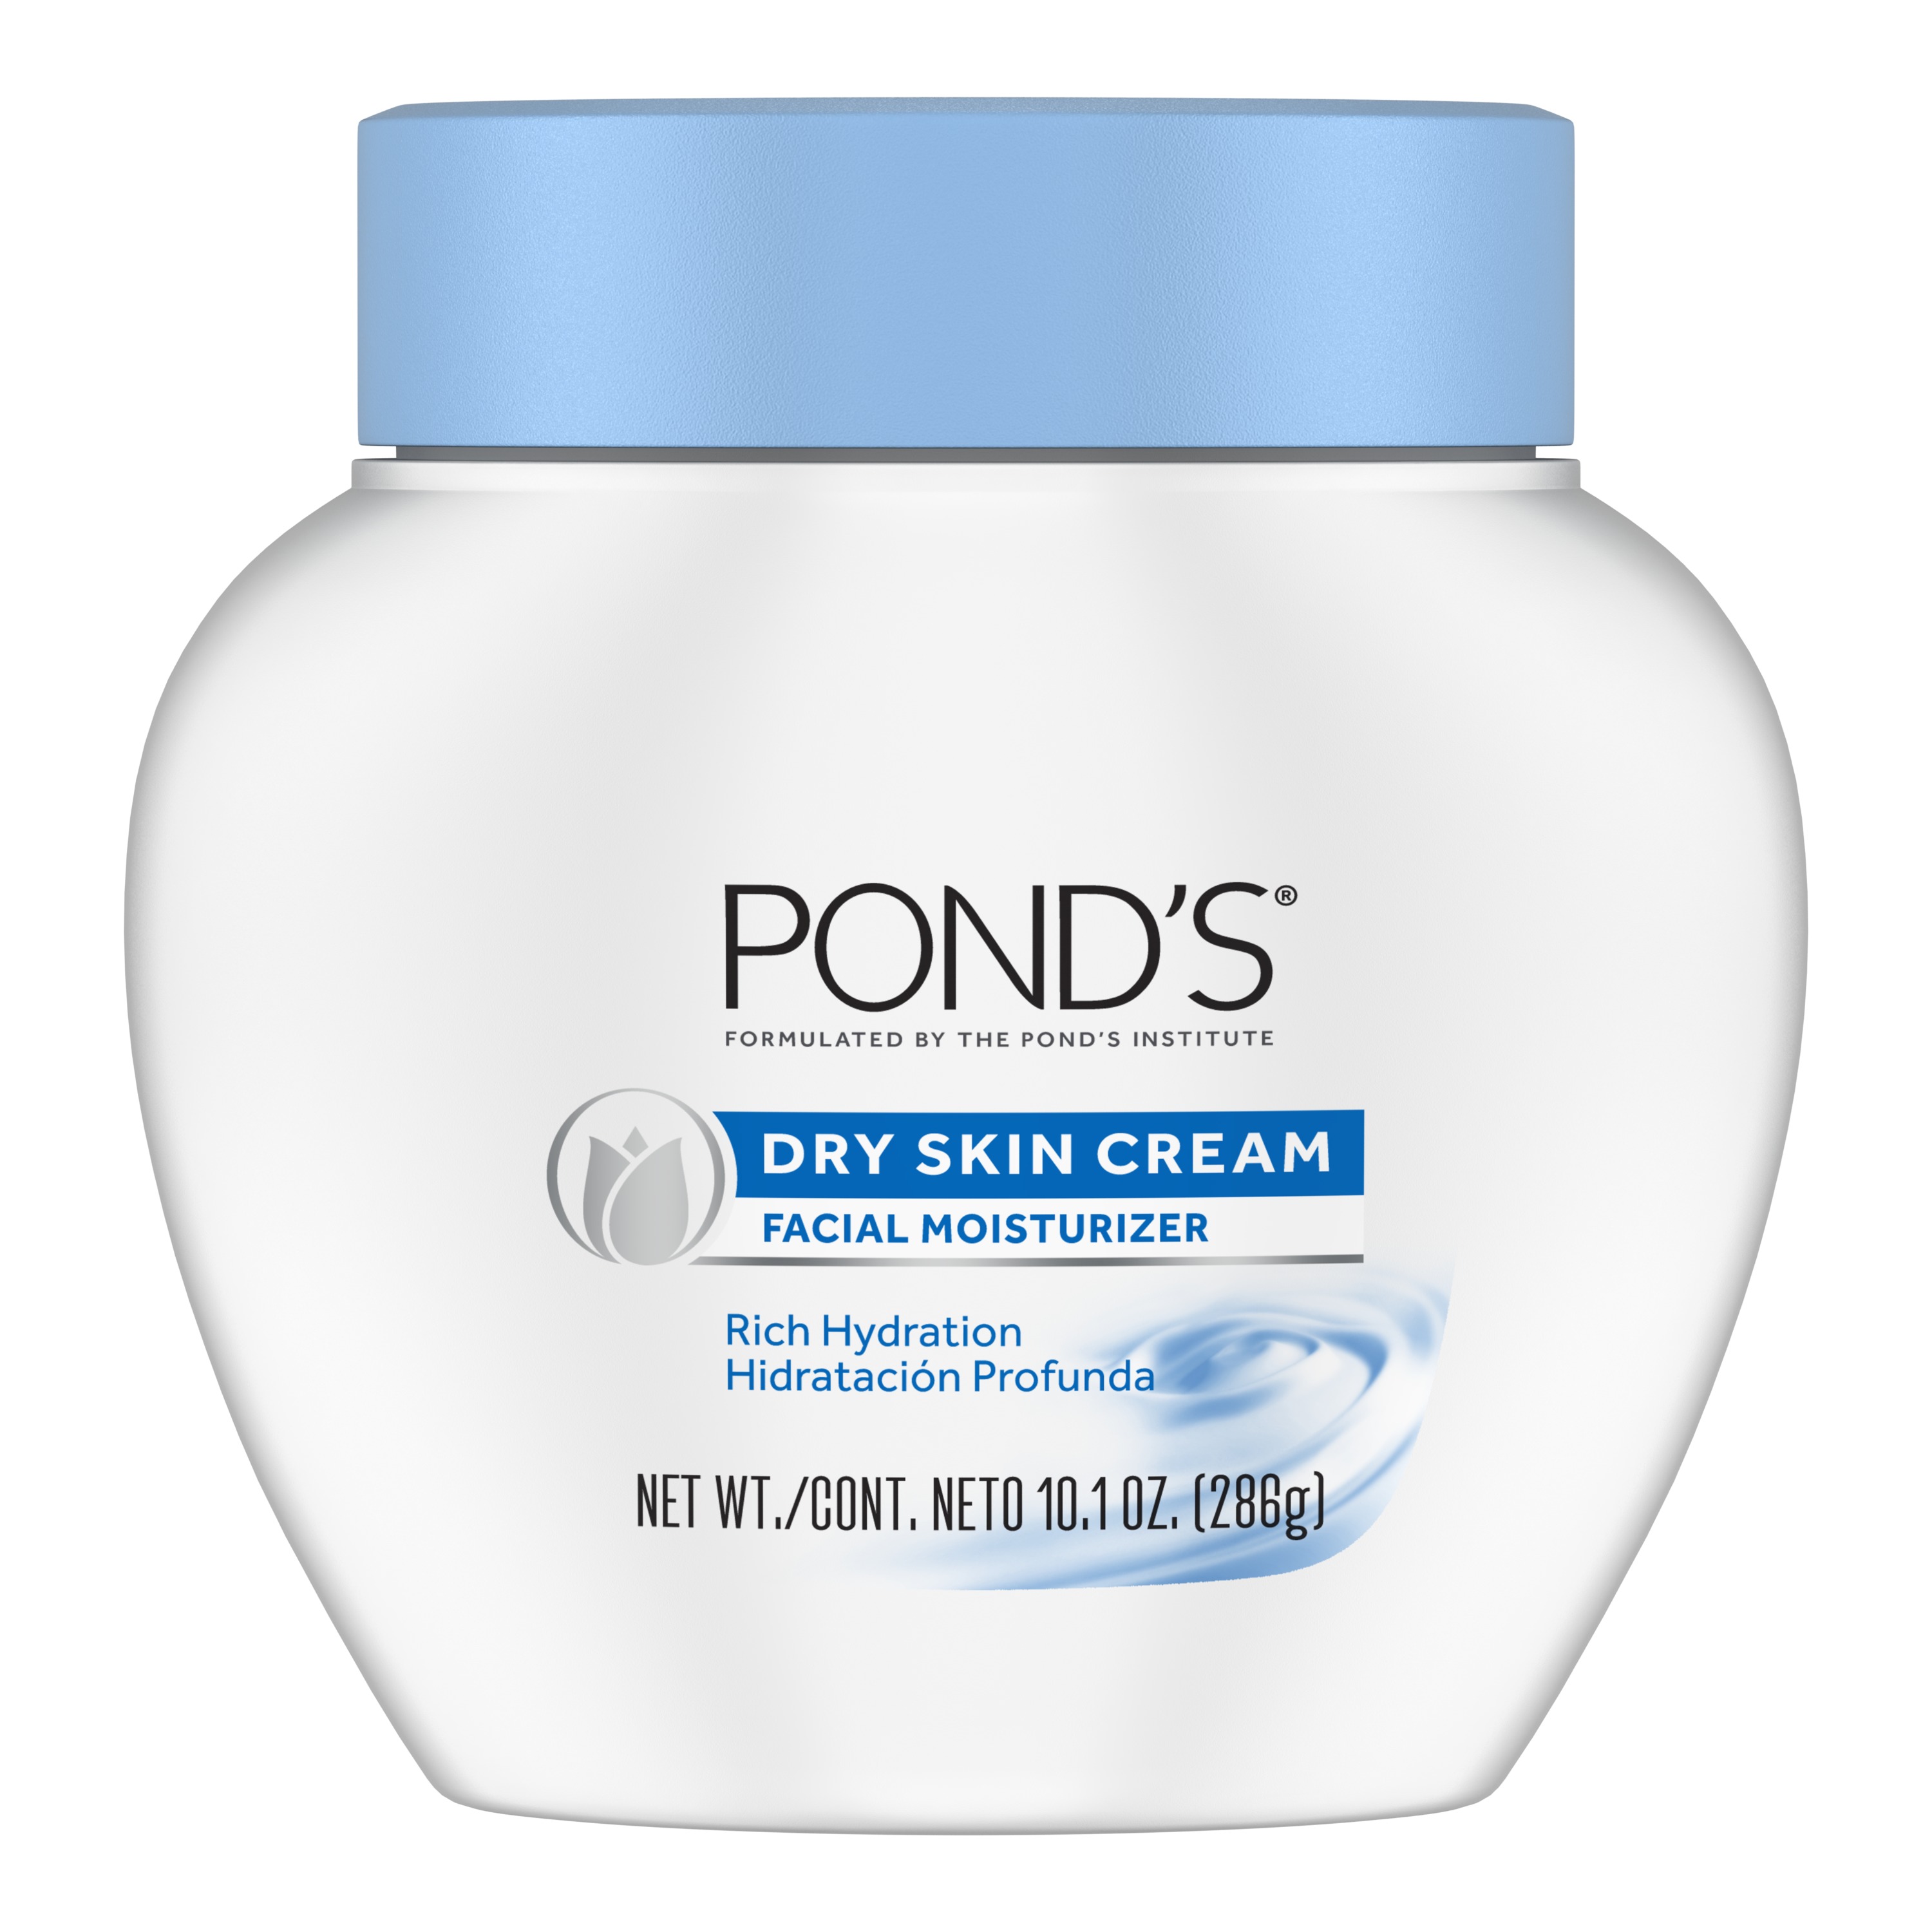 POND'S Dry Skin Cream Facial Moisturizer, 10.1 oz - image 1 of 8